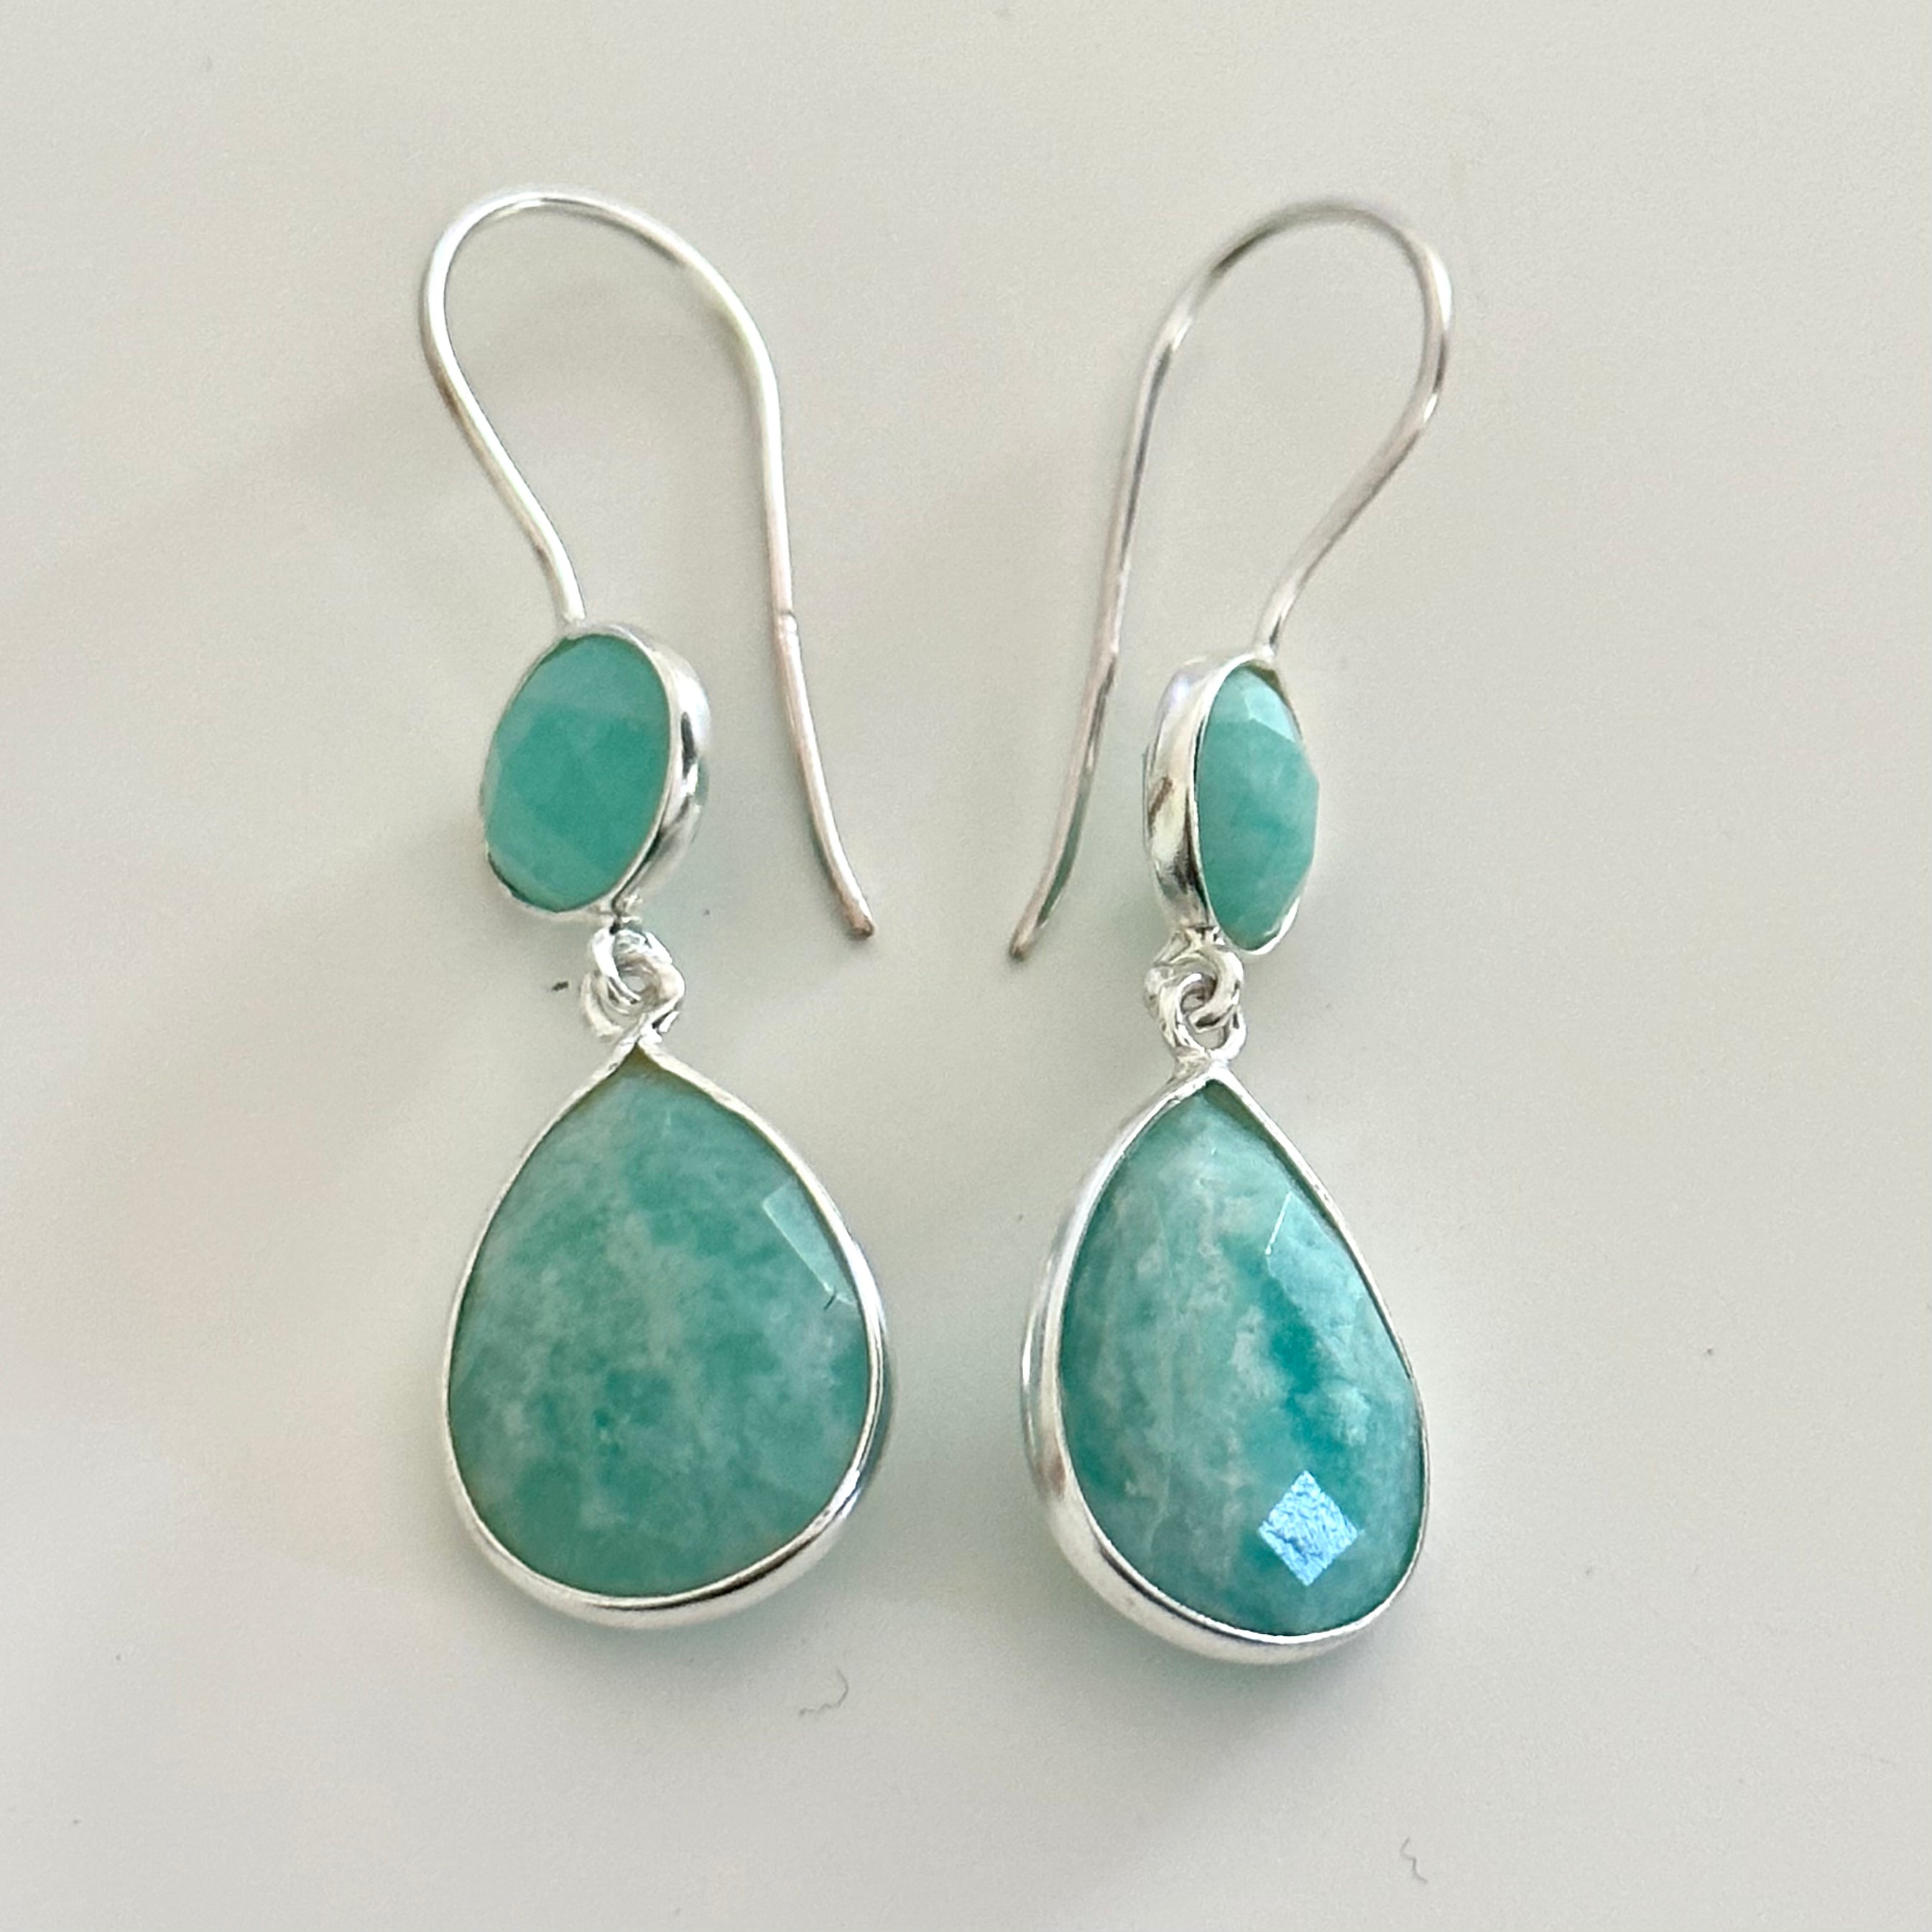 Amazonite Gemstone Two Stone Earrings in Sterling Silver - Teardrop